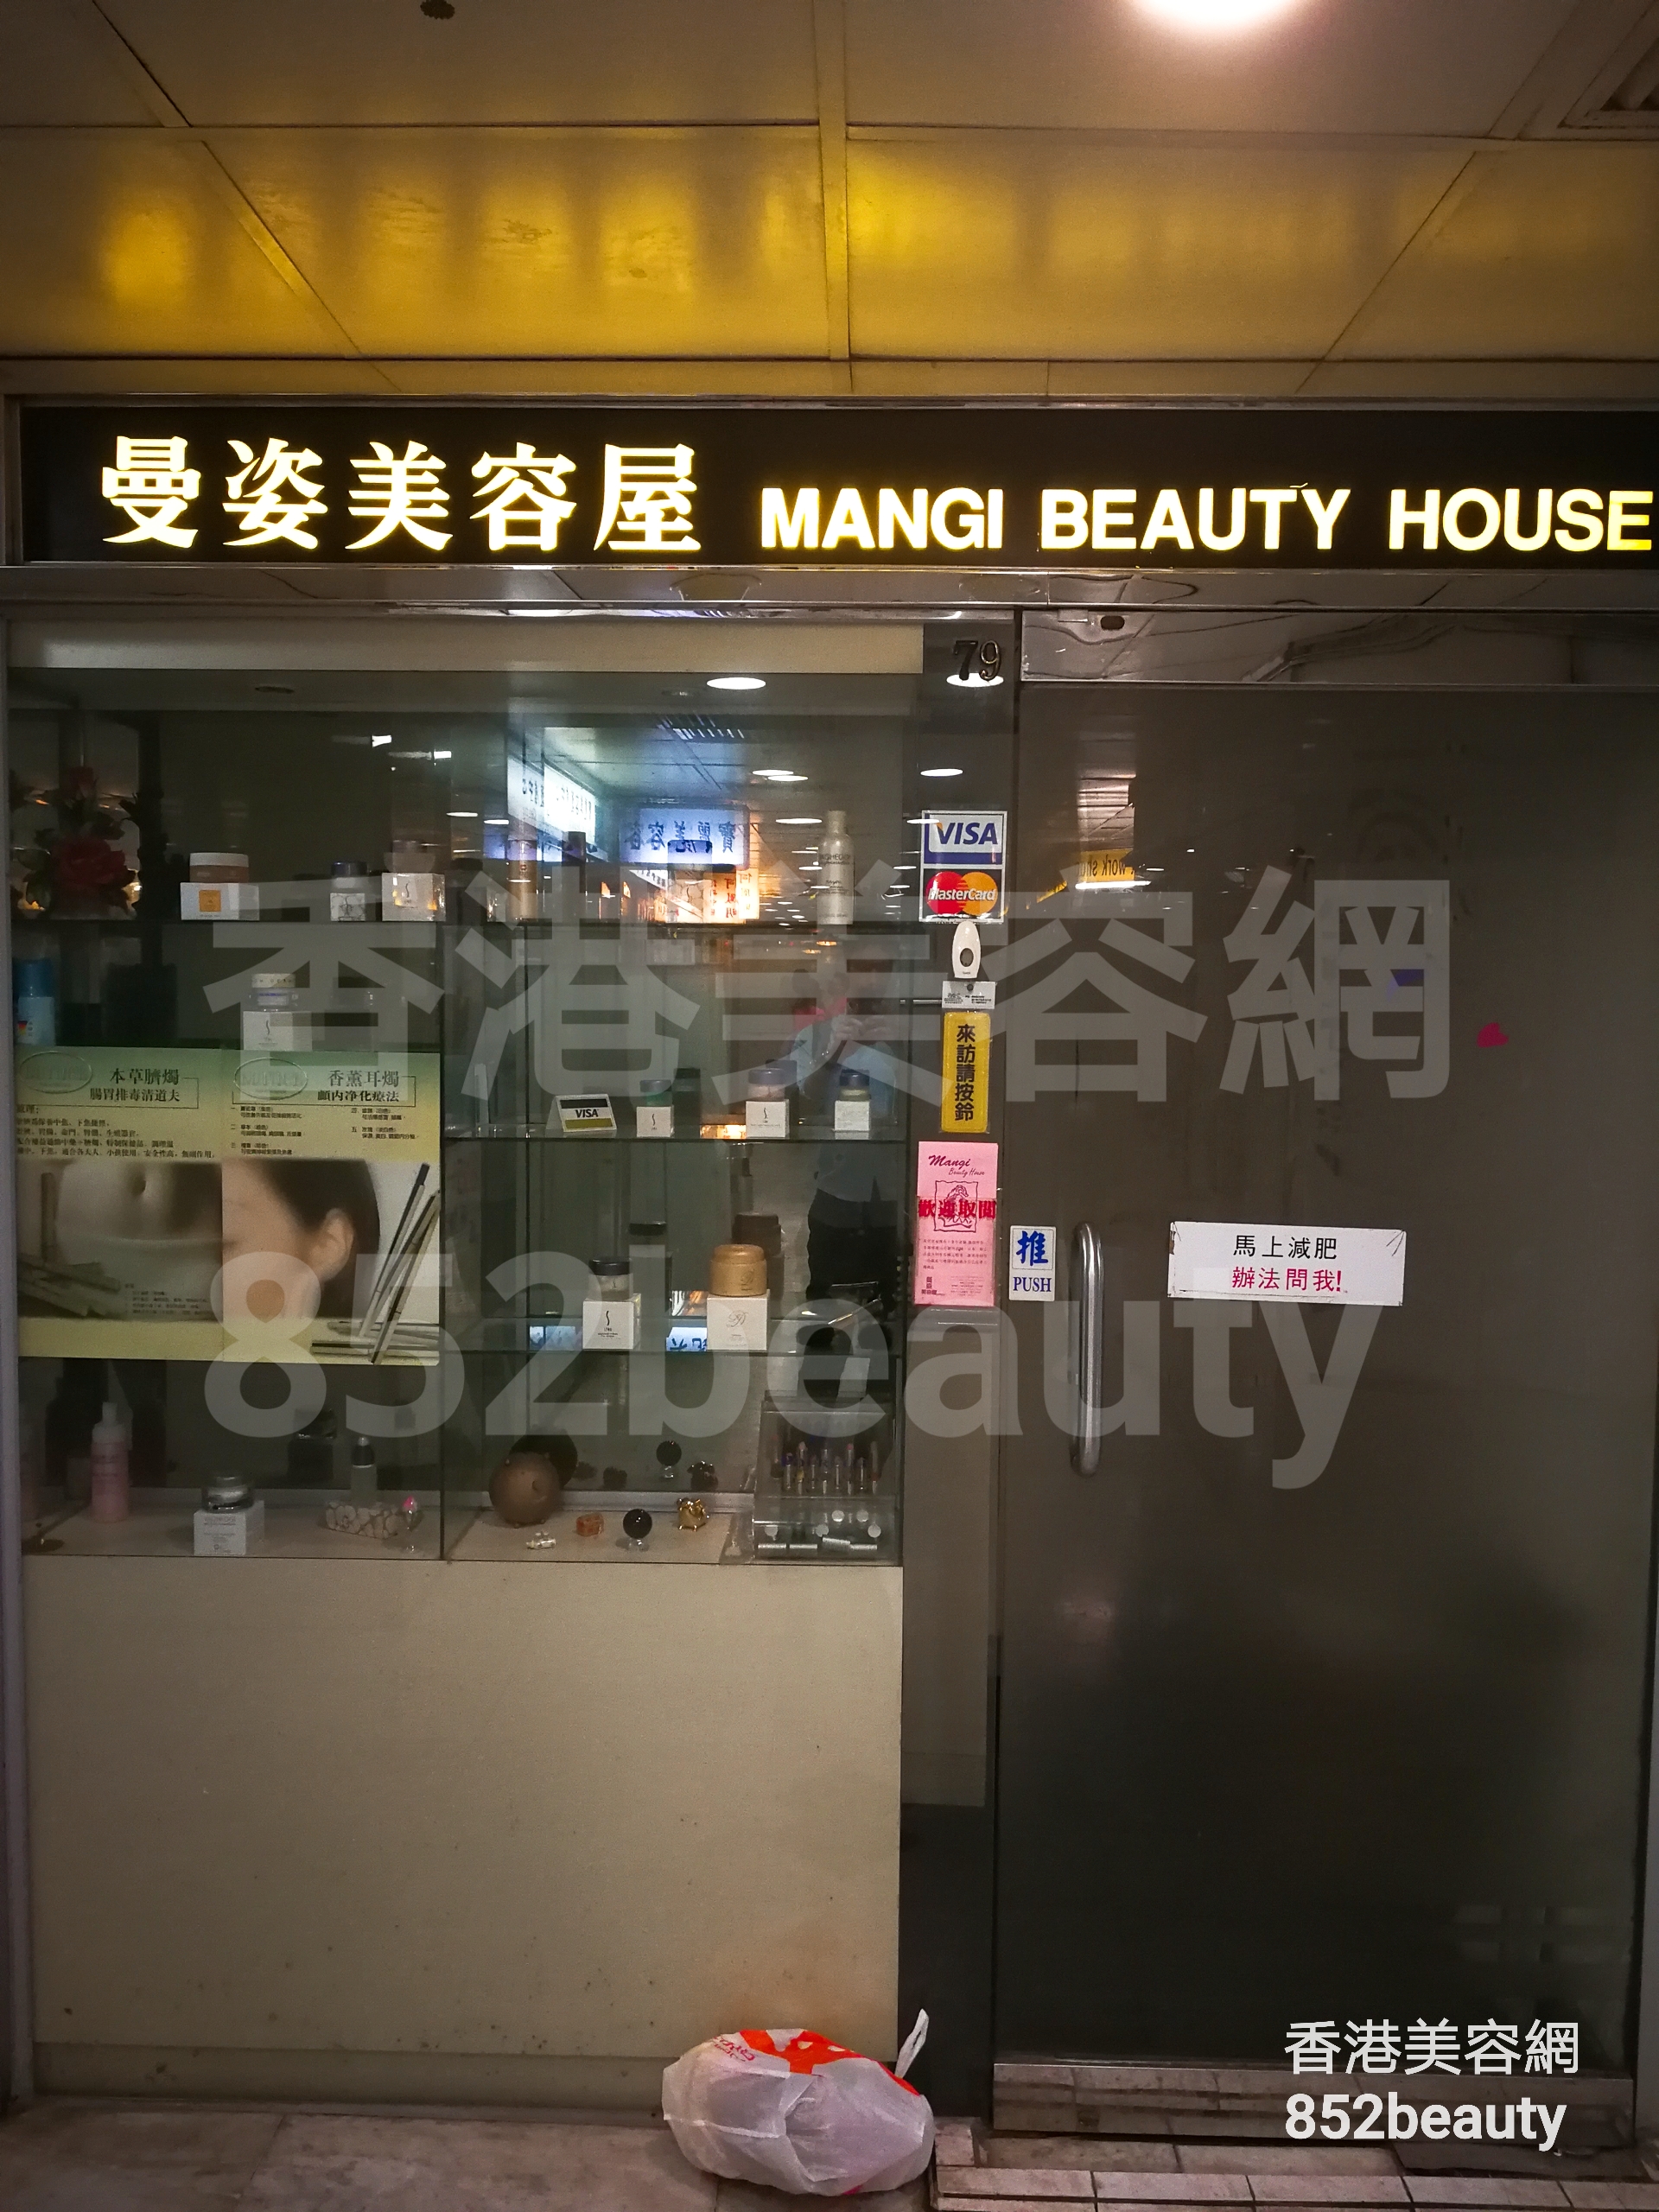 面部护理: Mangi Beauty House